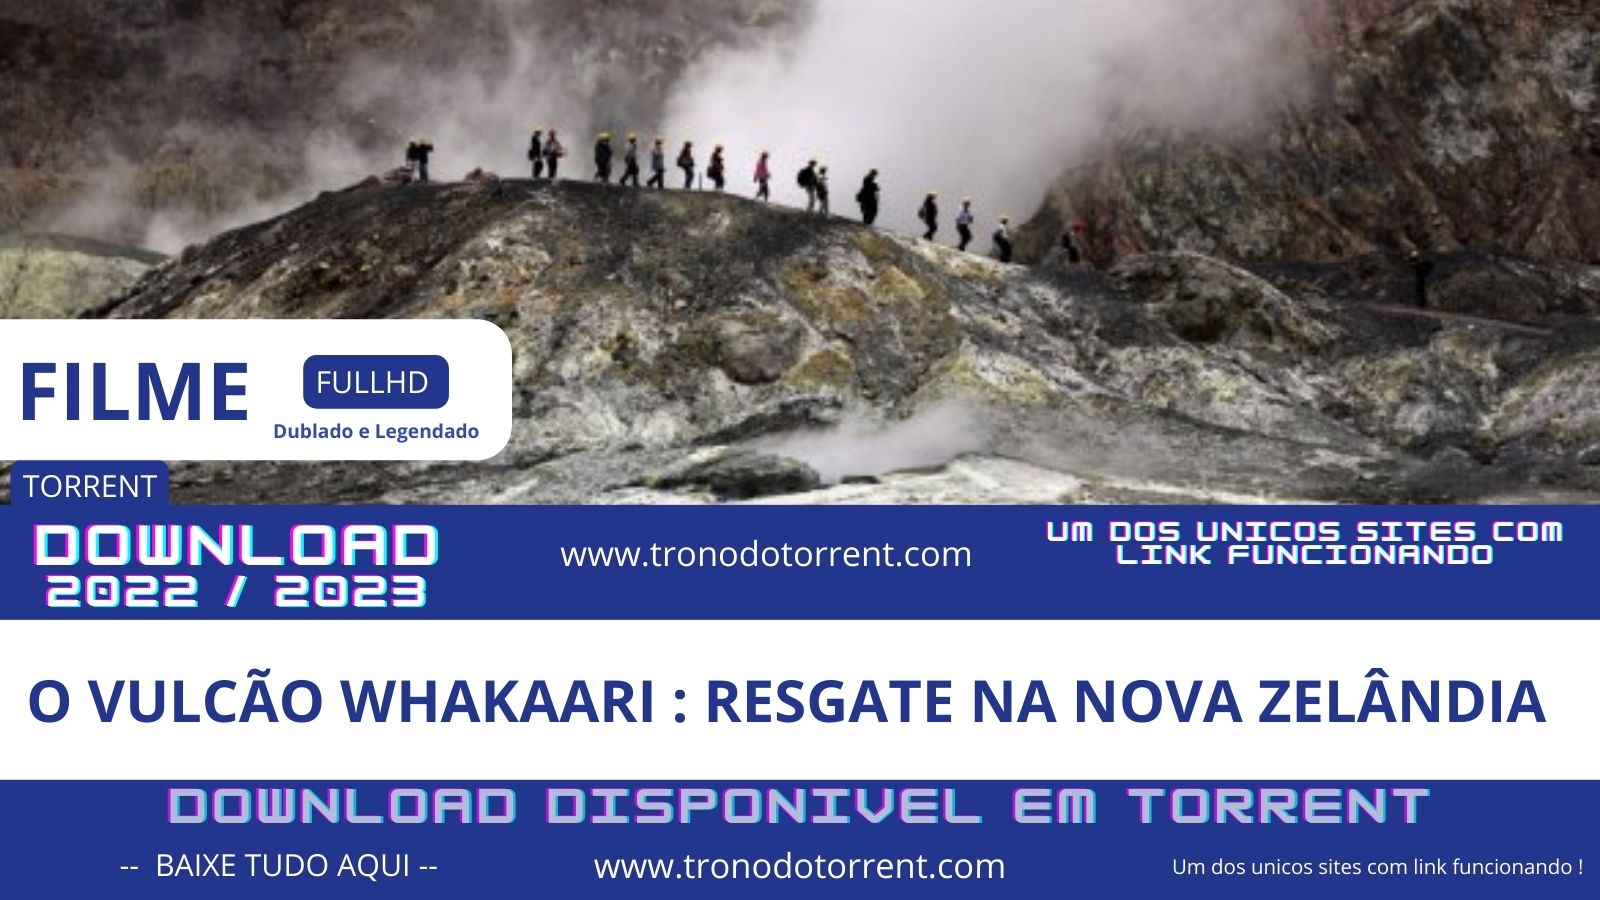 Vulcão Whakaari : Resgate na Nova Zelândia ( 2022 ) Documentário completo torrent | 1080p | Dual audio